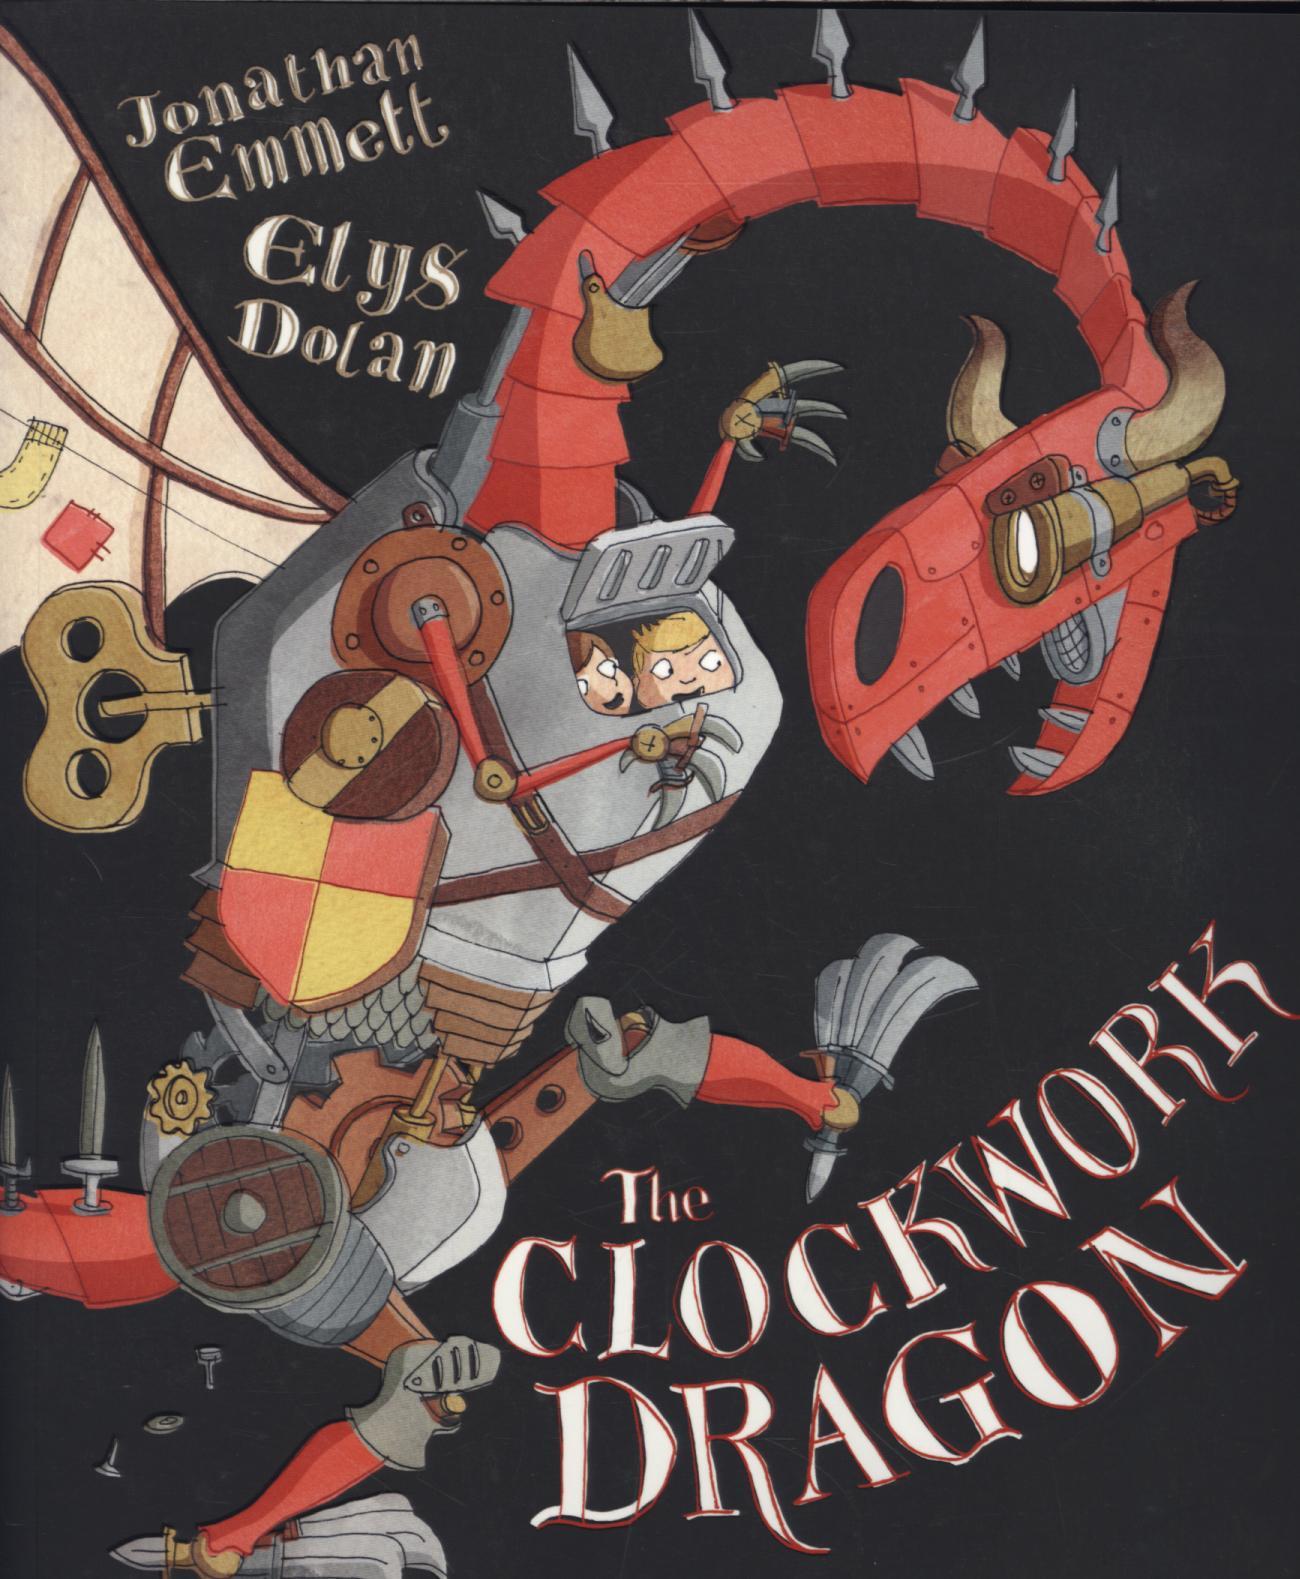 Clockwork Dragon - Jonathan Emmet & Elys Dolan